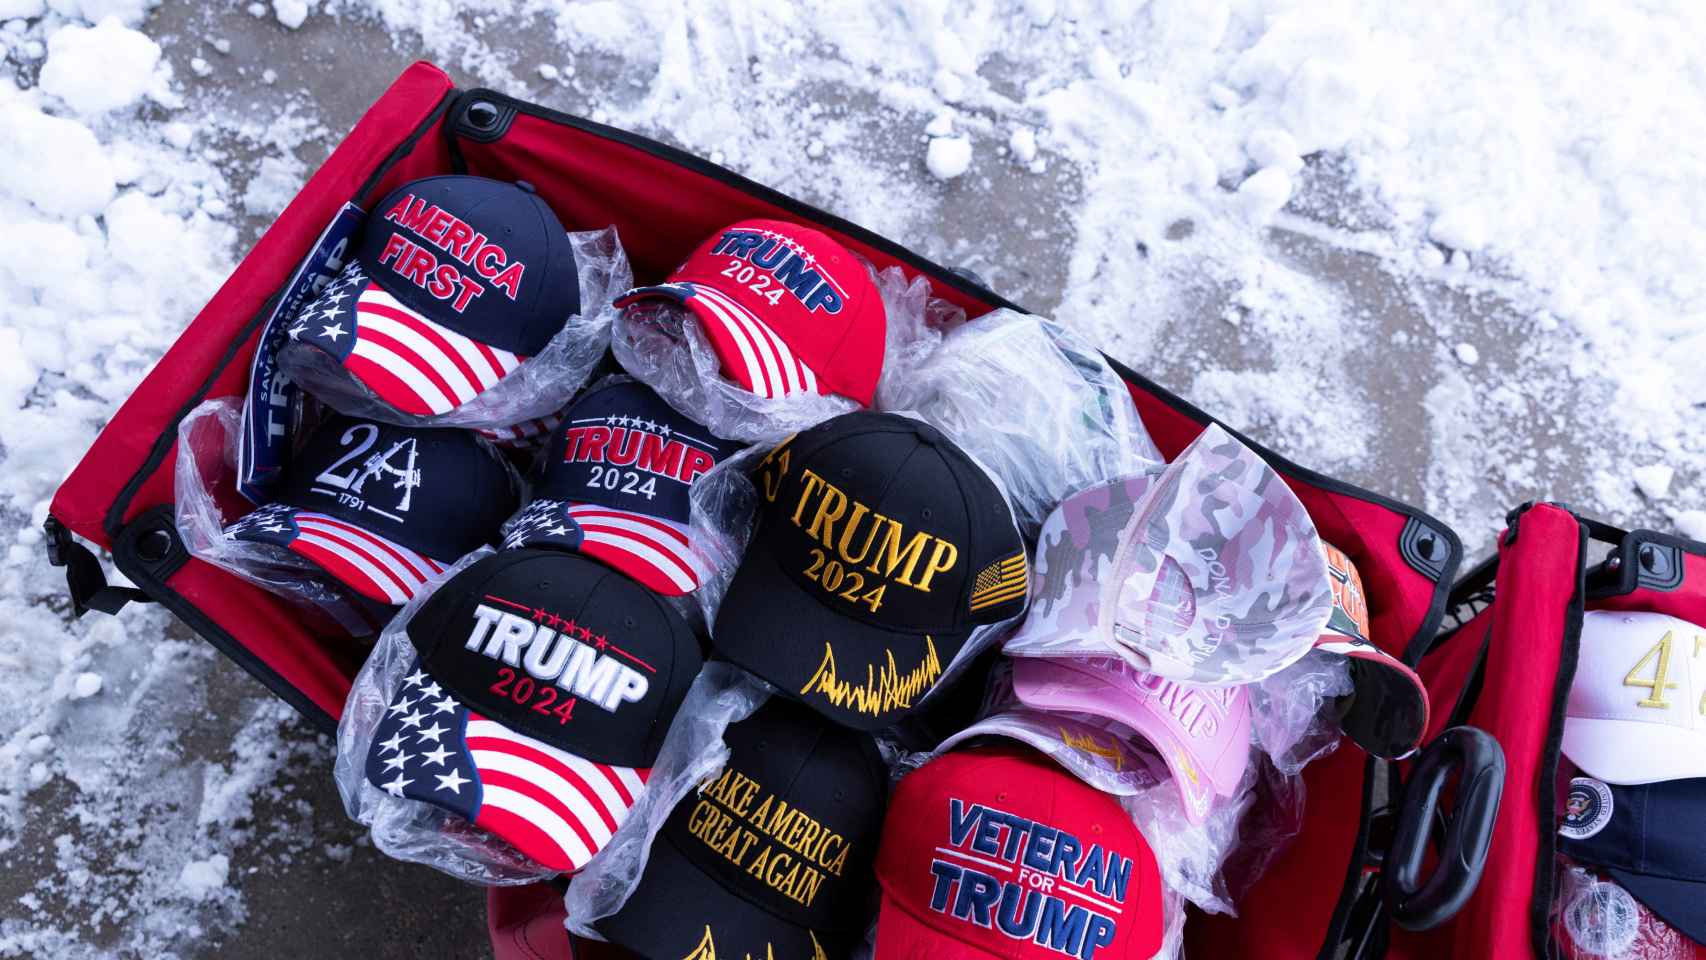 Un puesto de venta de gorras de apoyo a Trump en la nevada Iowa